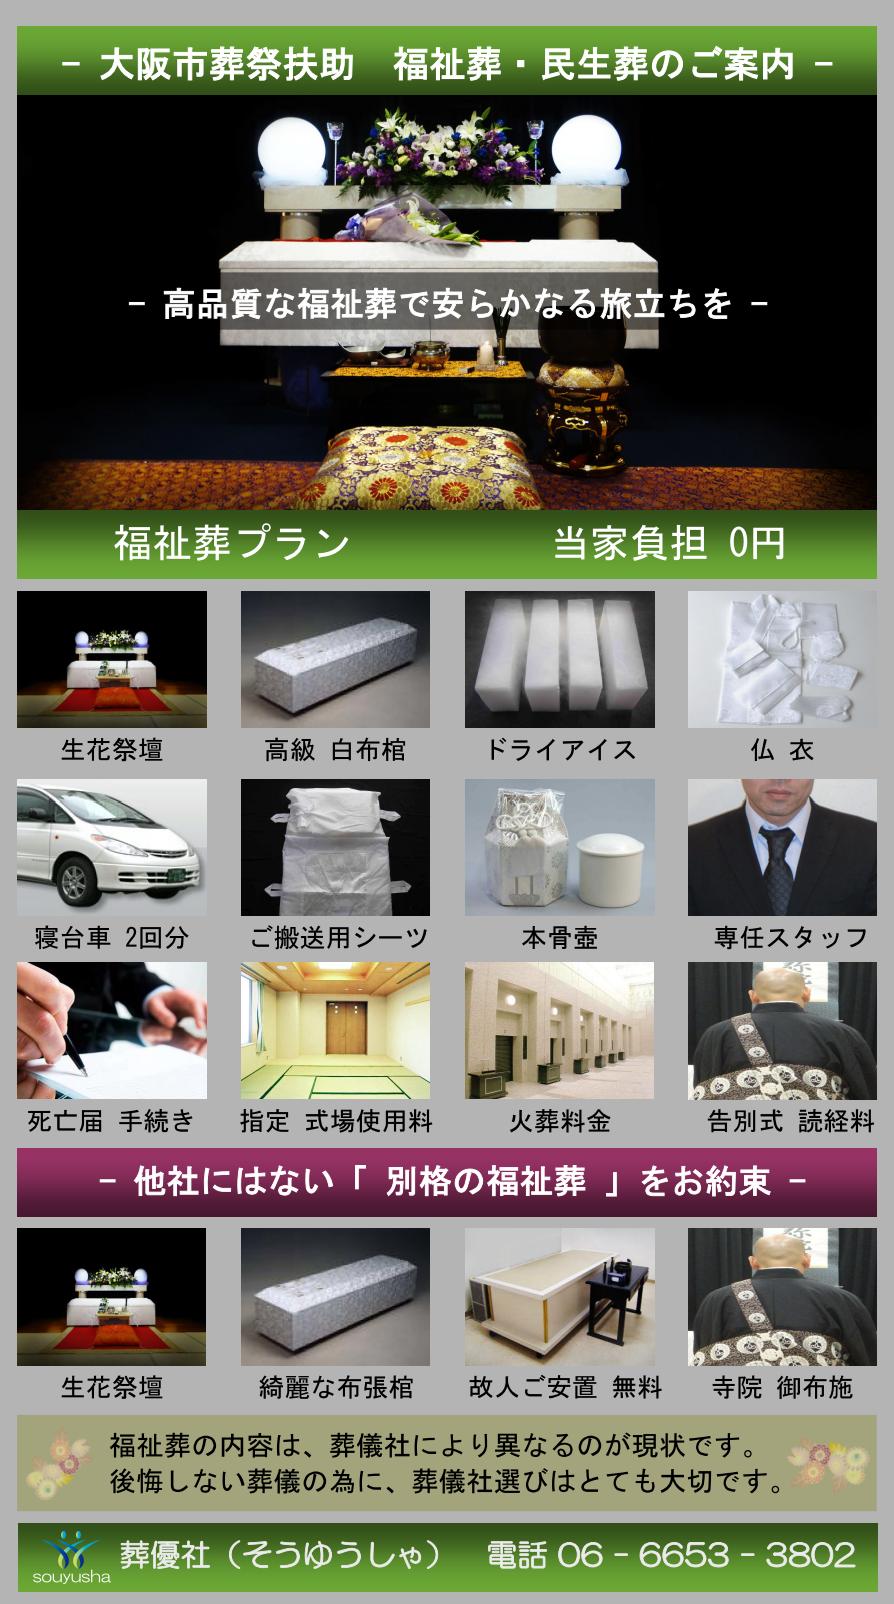 大阪市 港区での福祉葬、生活保護者のお葬式のご案内